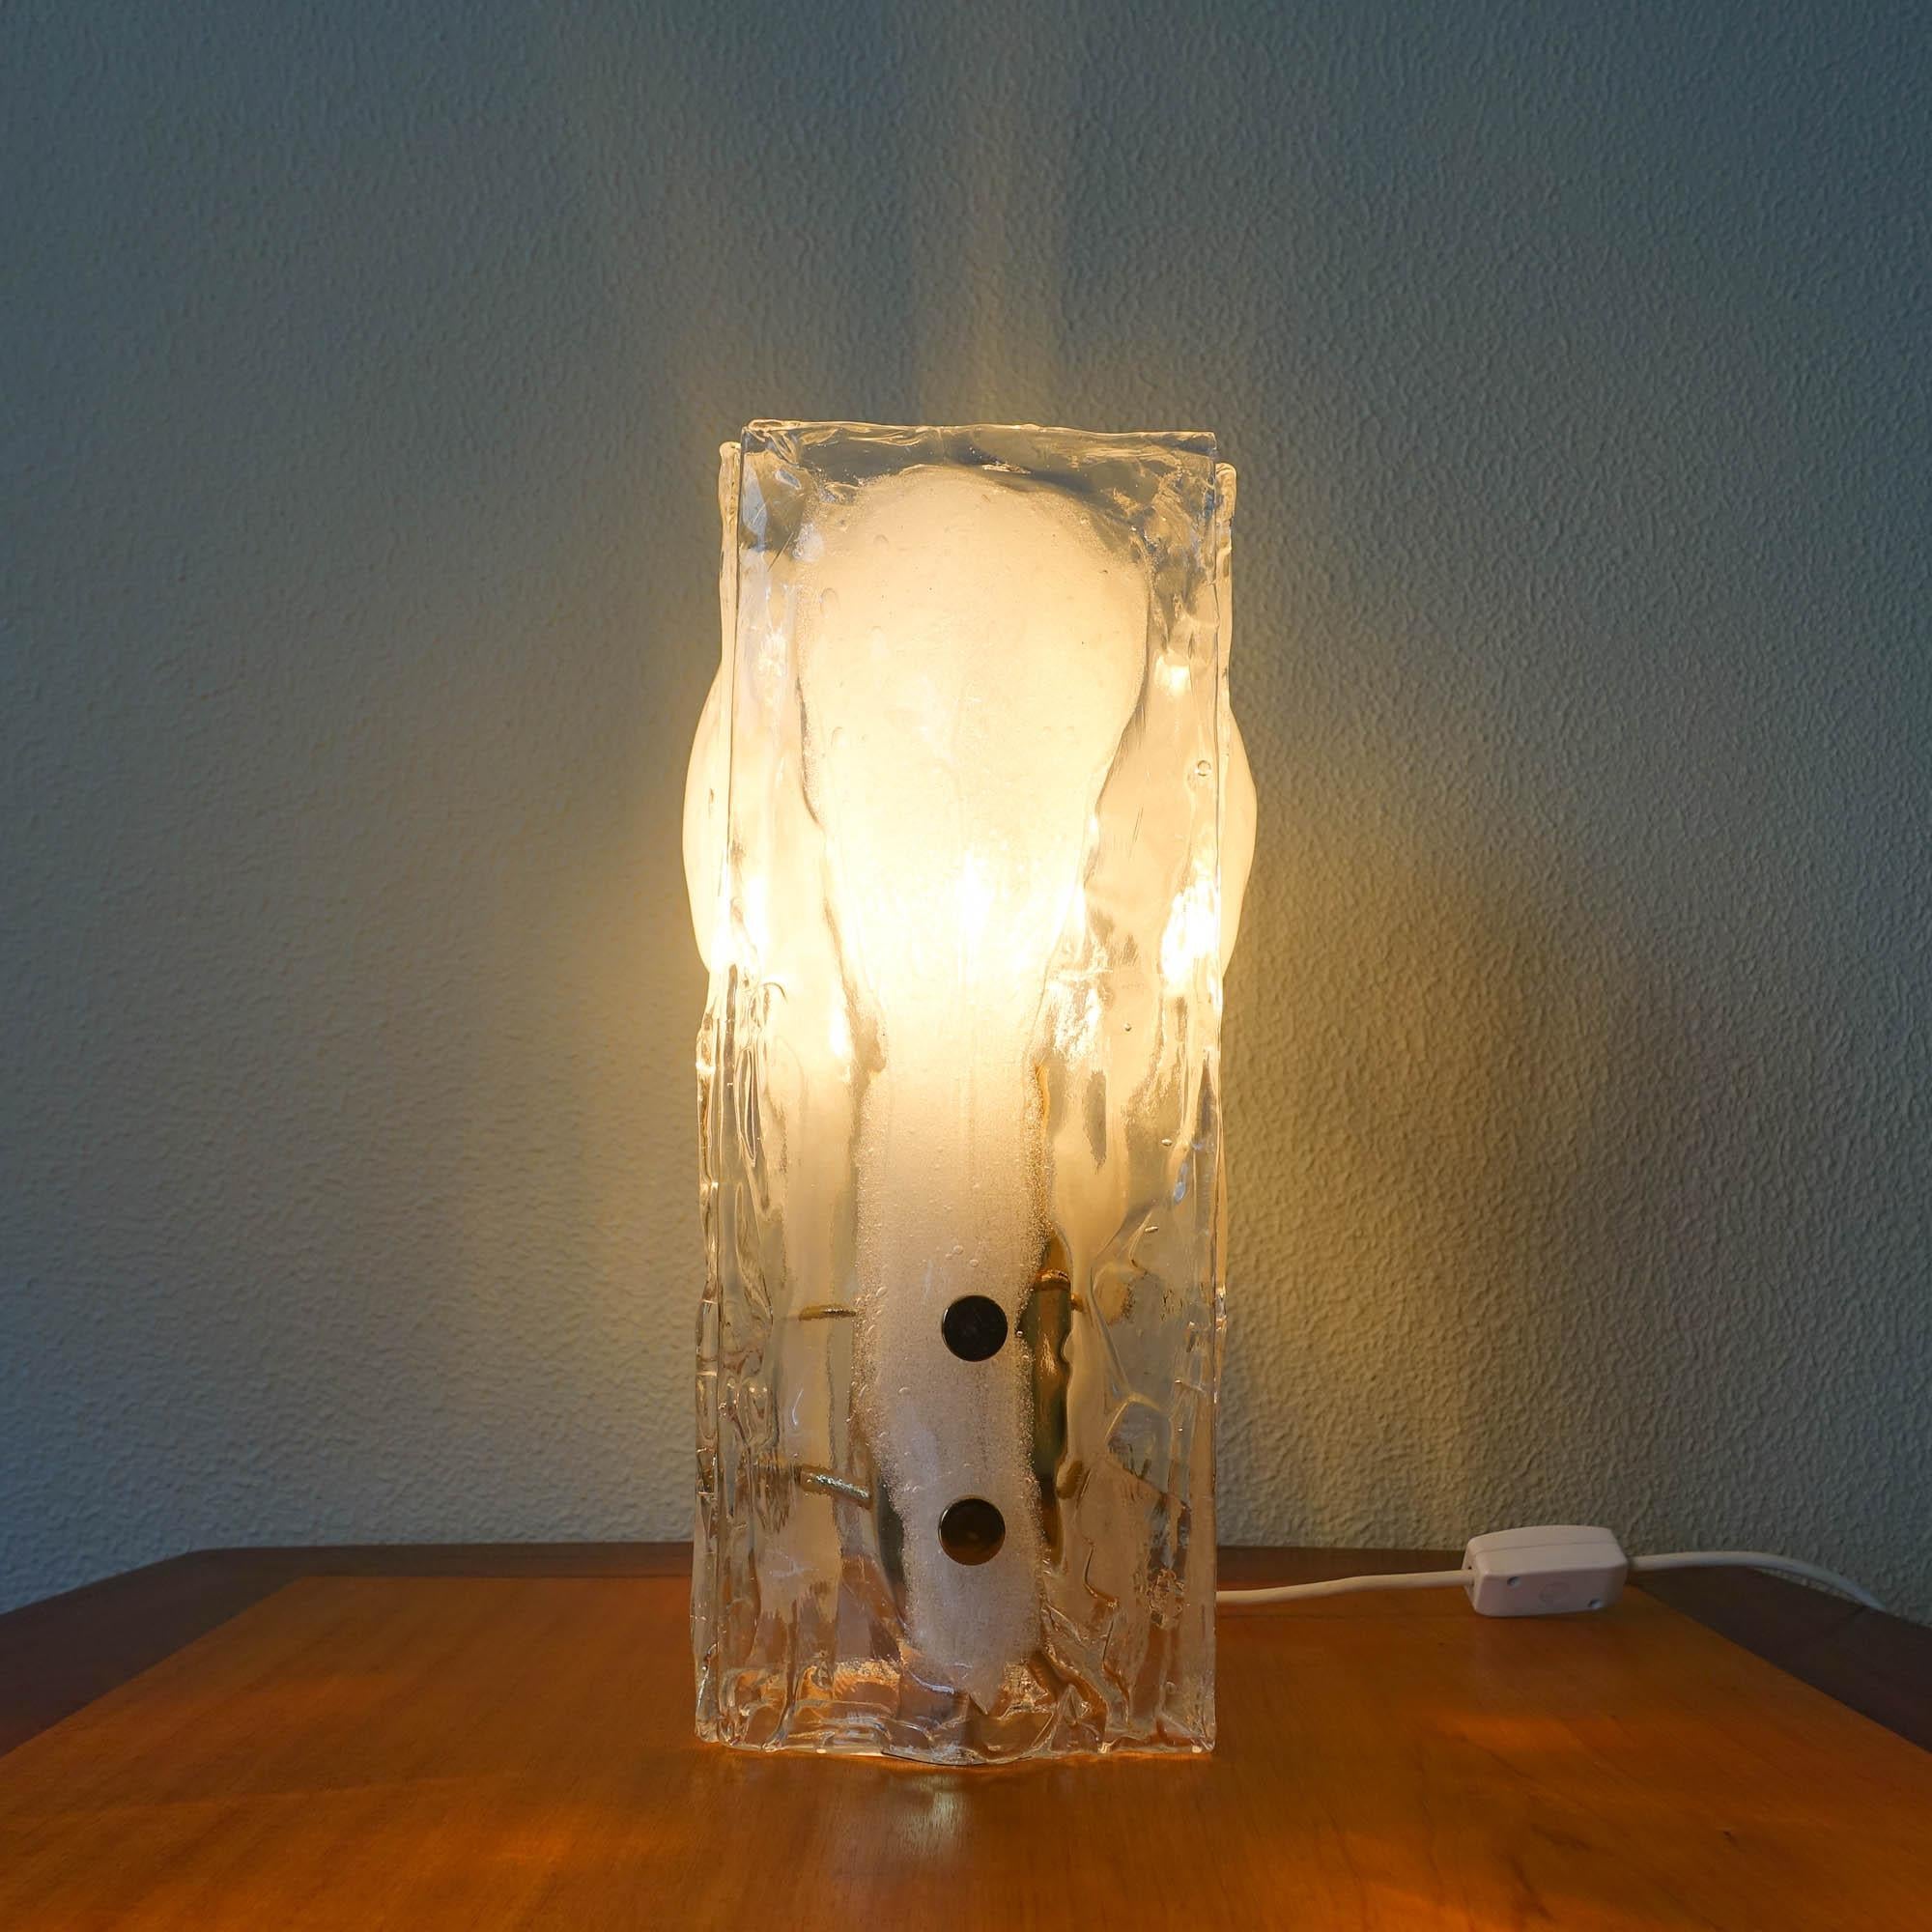 melting glass lamp